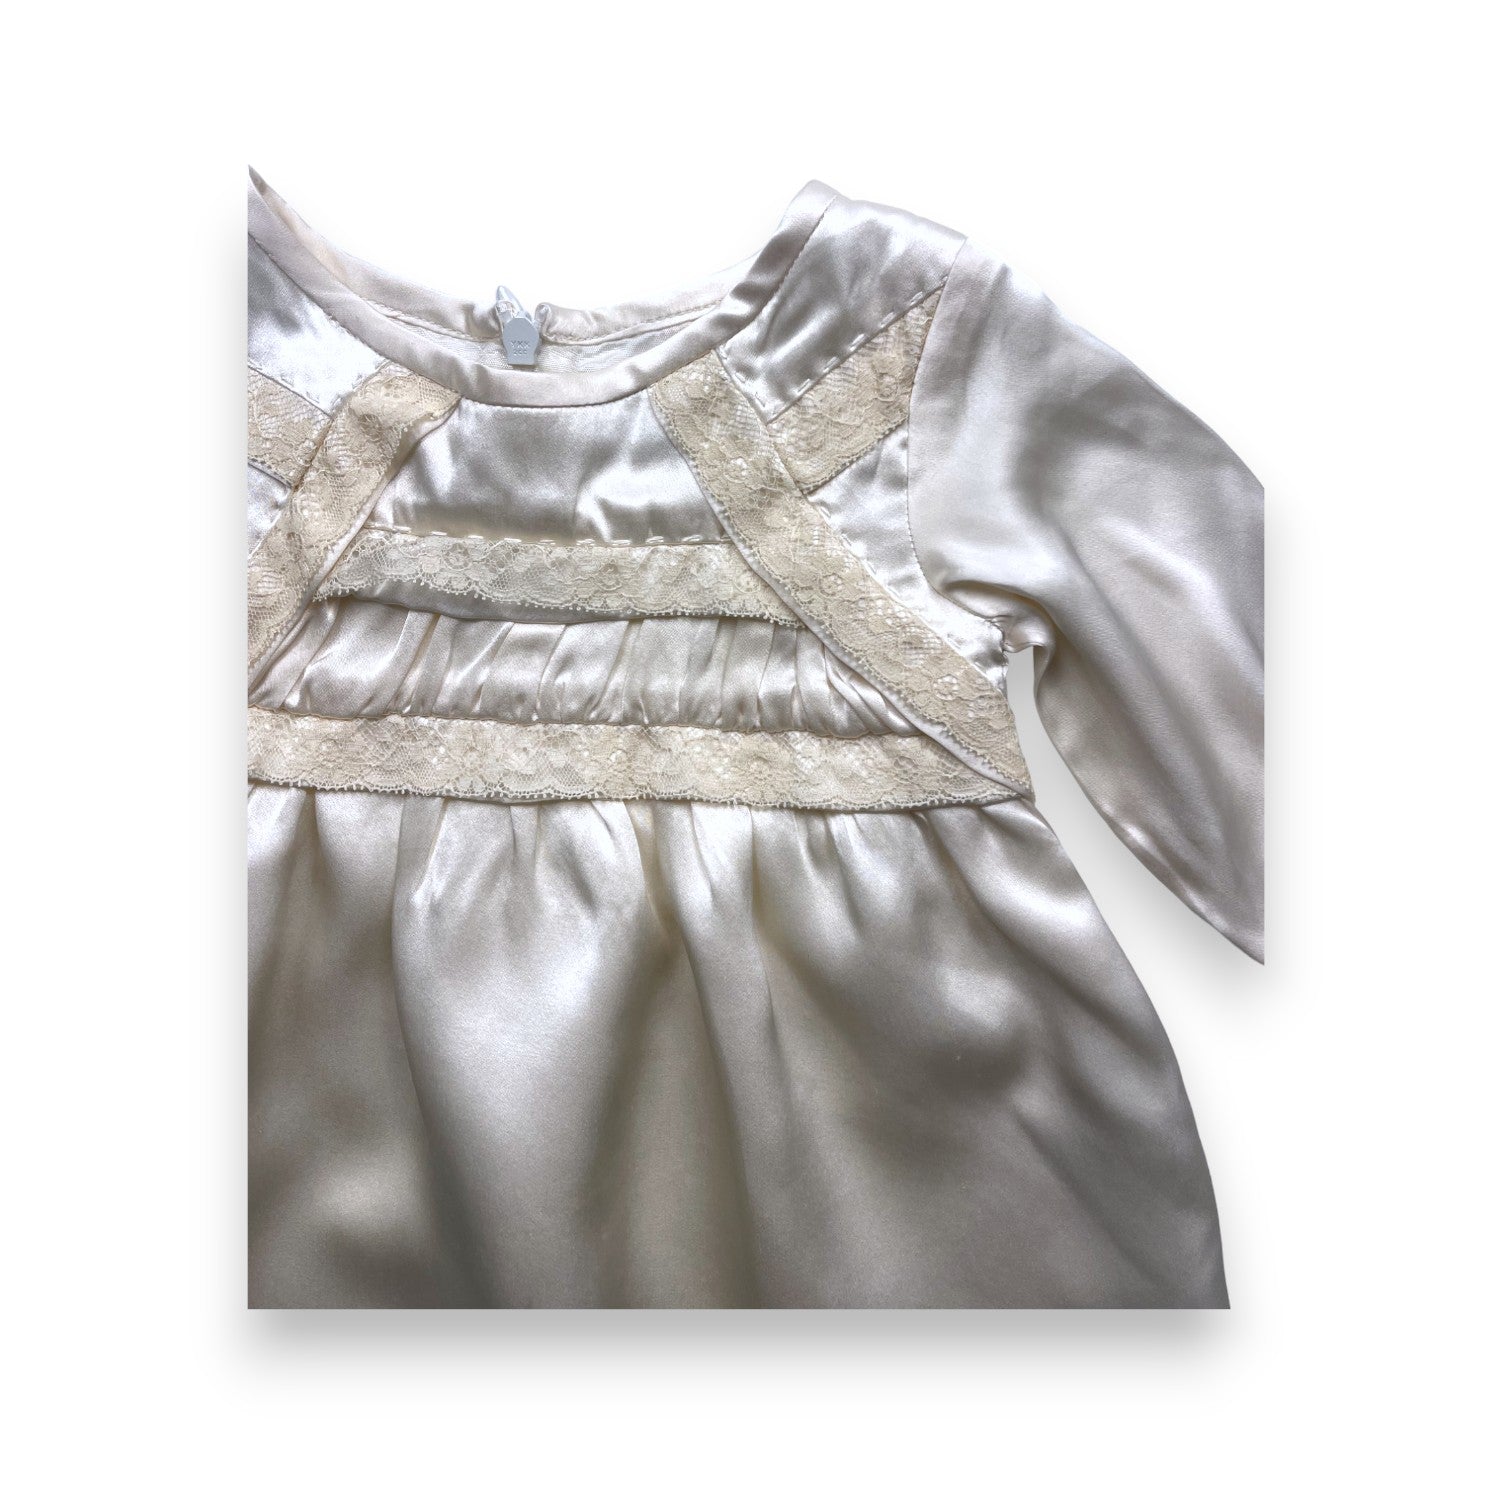 CHARABIA - Robe de cérémonie en soie détails dentelle - 6 mois